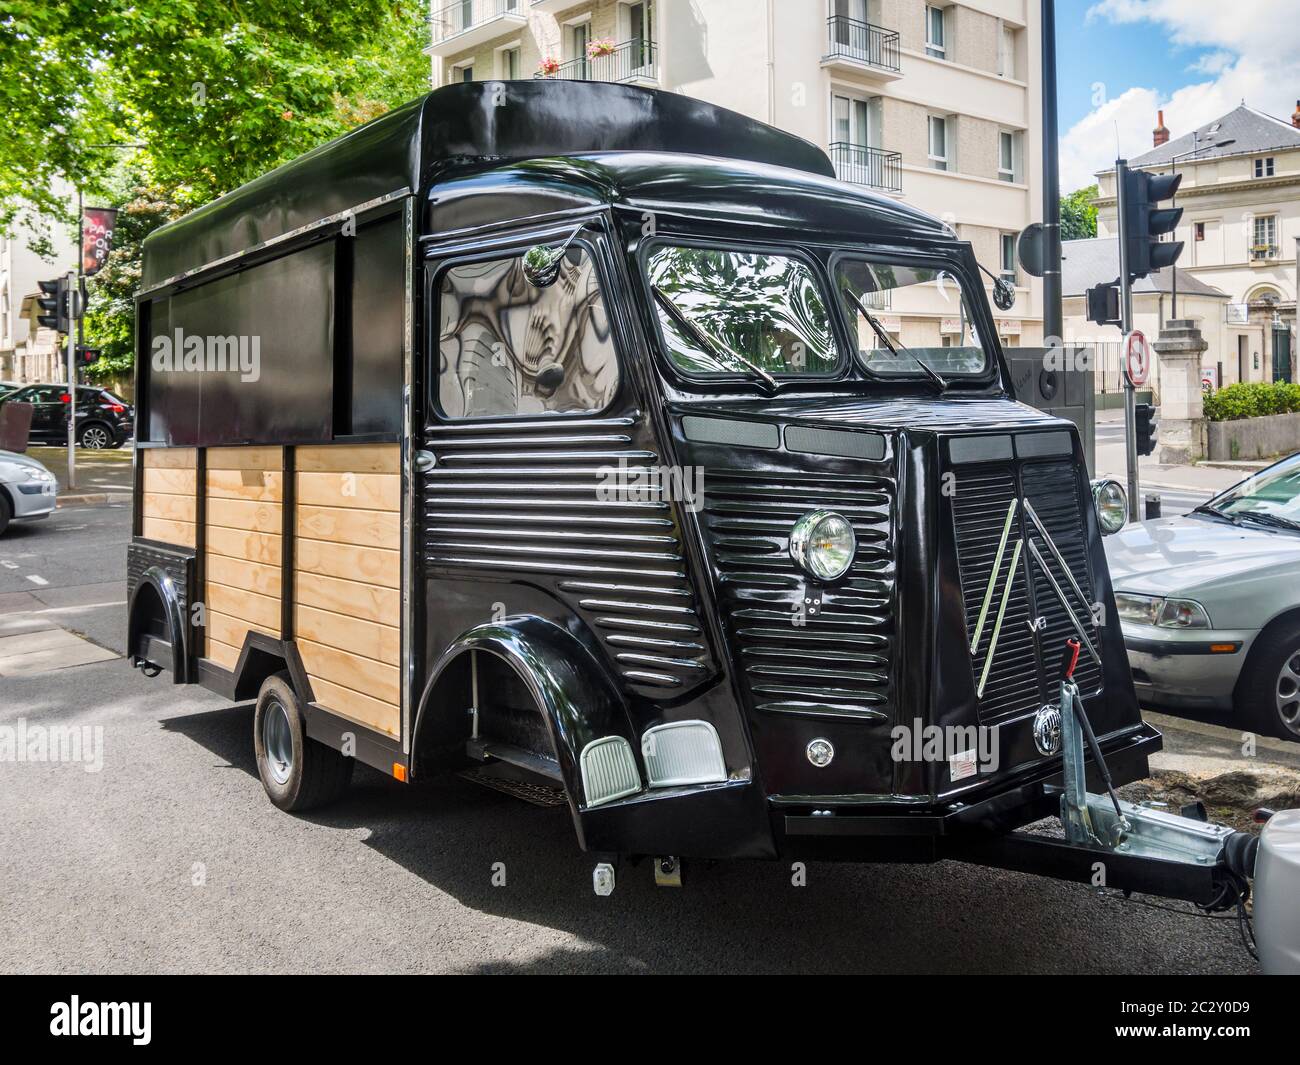 Ungewöhnlicher Citroen Typ-H van liebevoll einen Spitznamen "Tete de Cochon" (Schweinsnase) in einen Anhänger für ein mobiles Unternehmen umgewandelt - Tours, Frankreich. Stockfoto